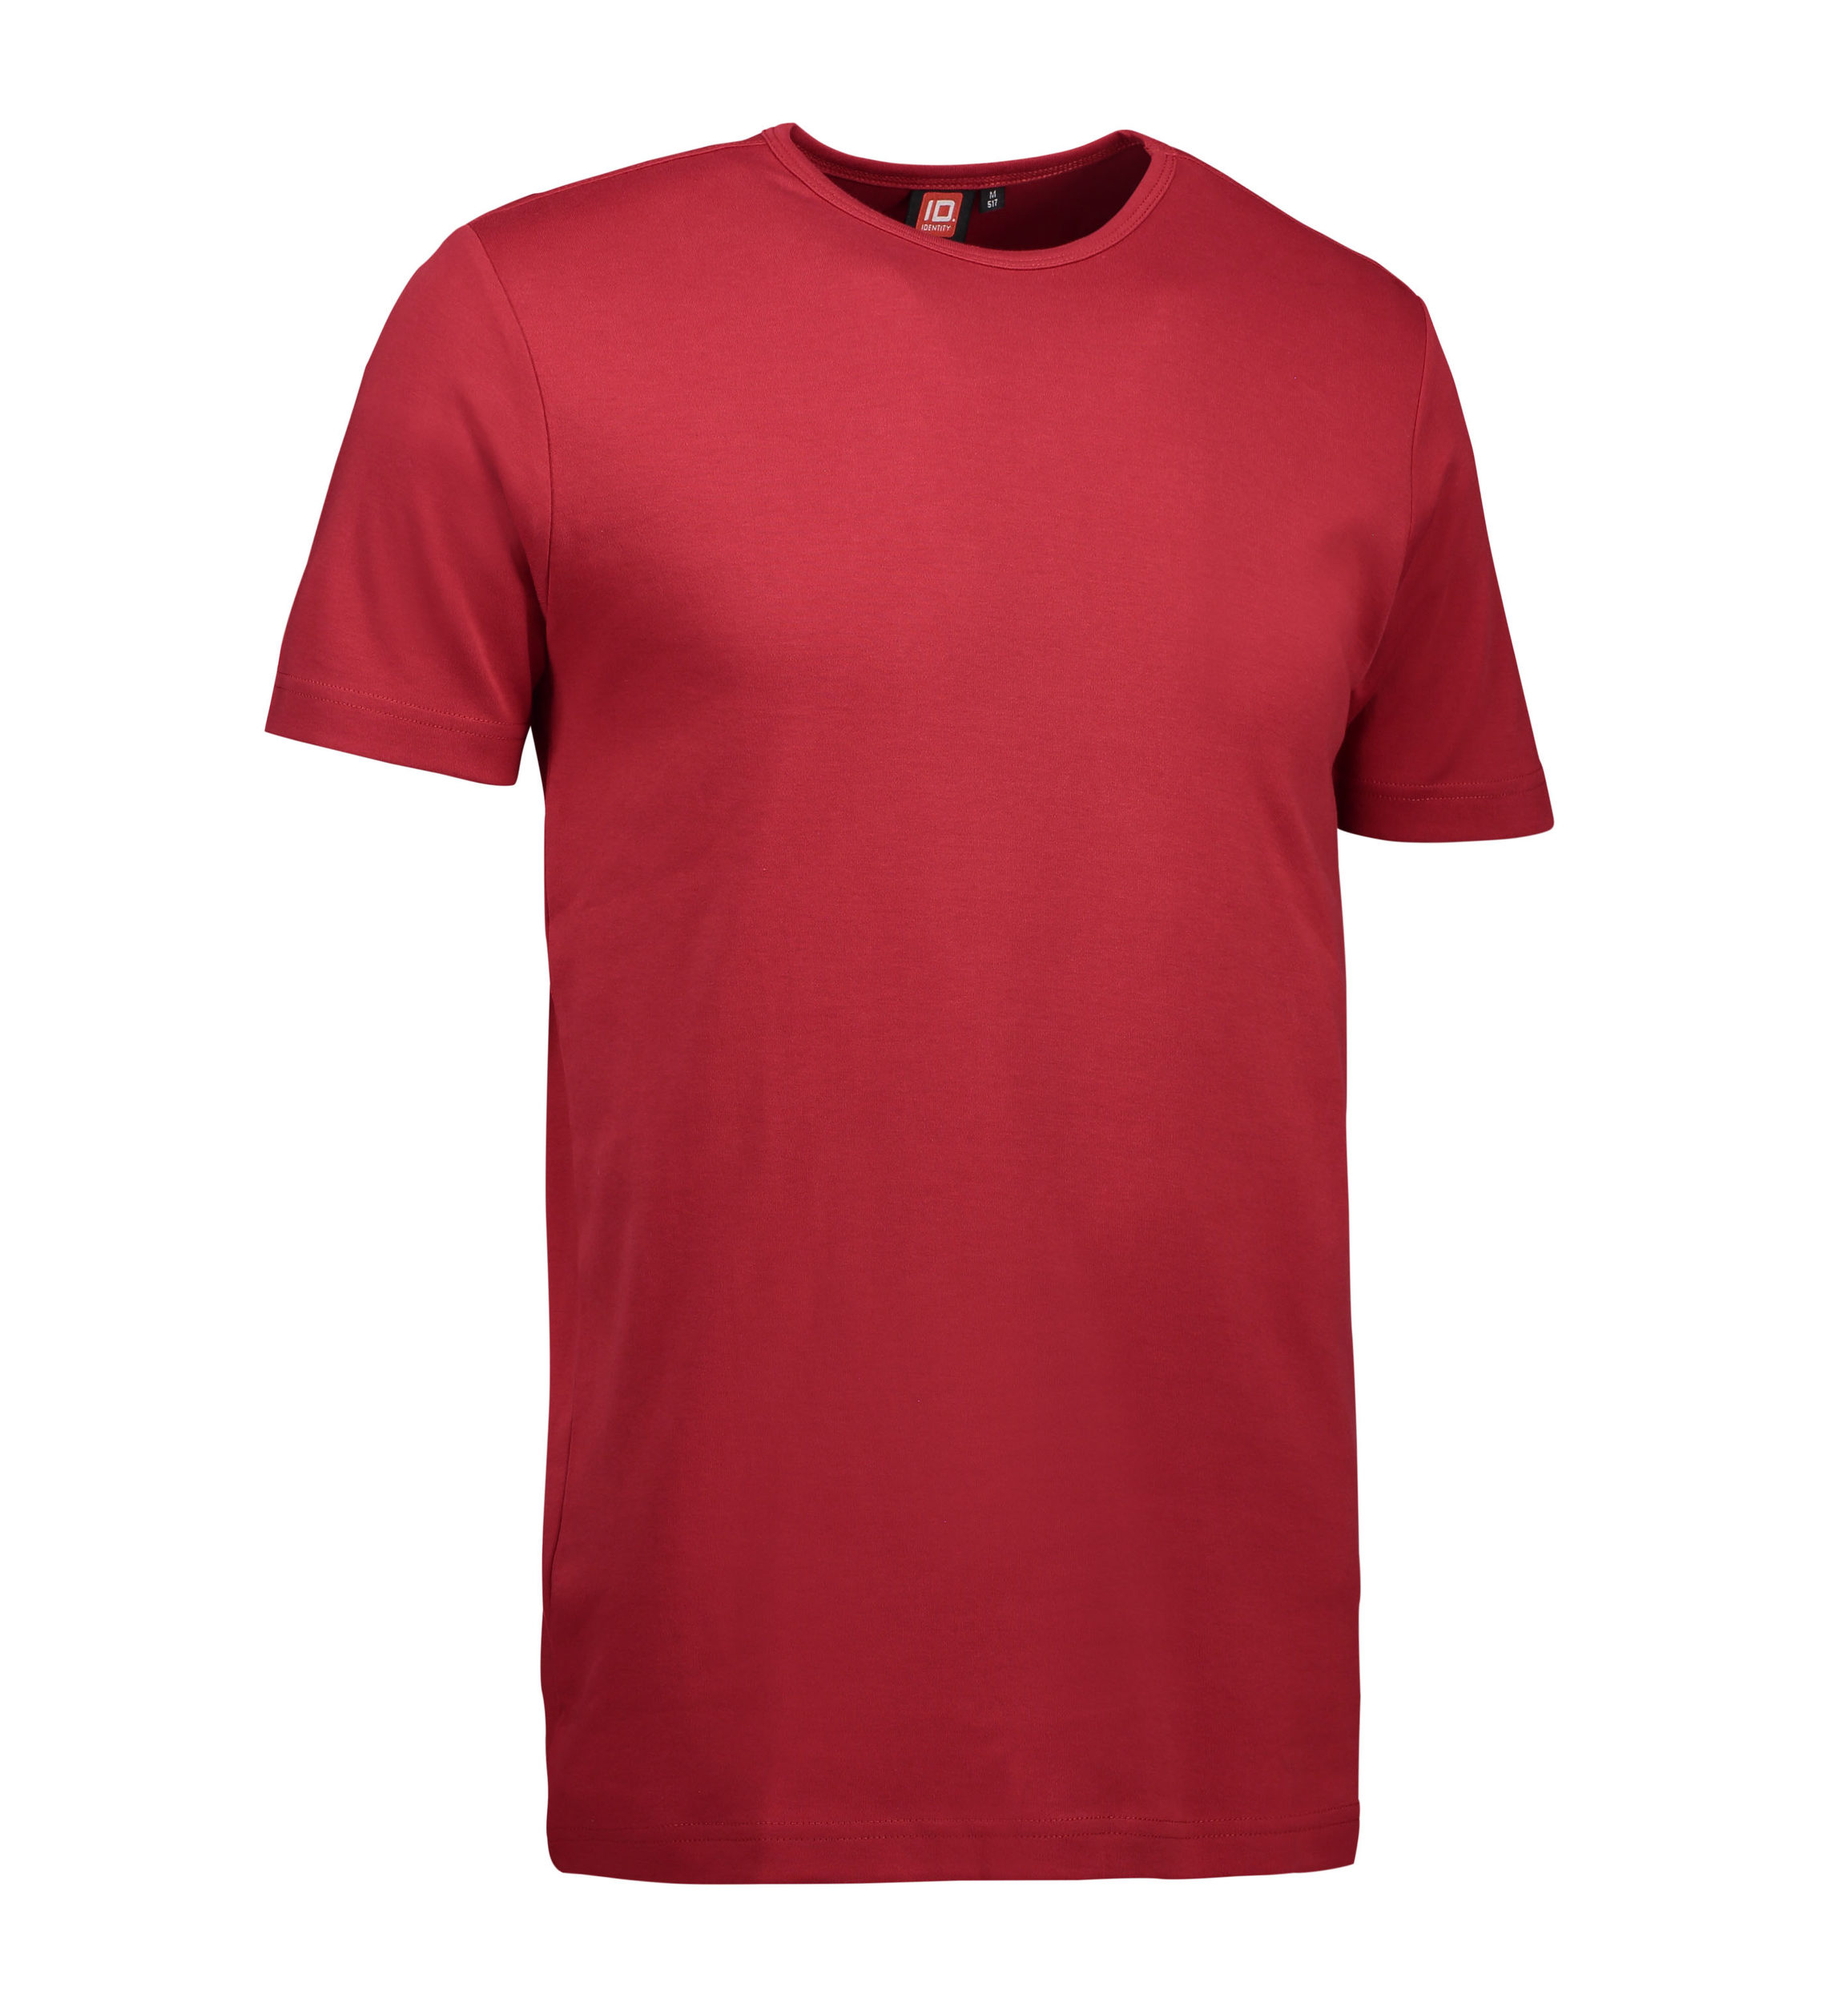 Billede af Rød t-shirt med rund hals til mænd - S hos Sygeplejebutikken.dk